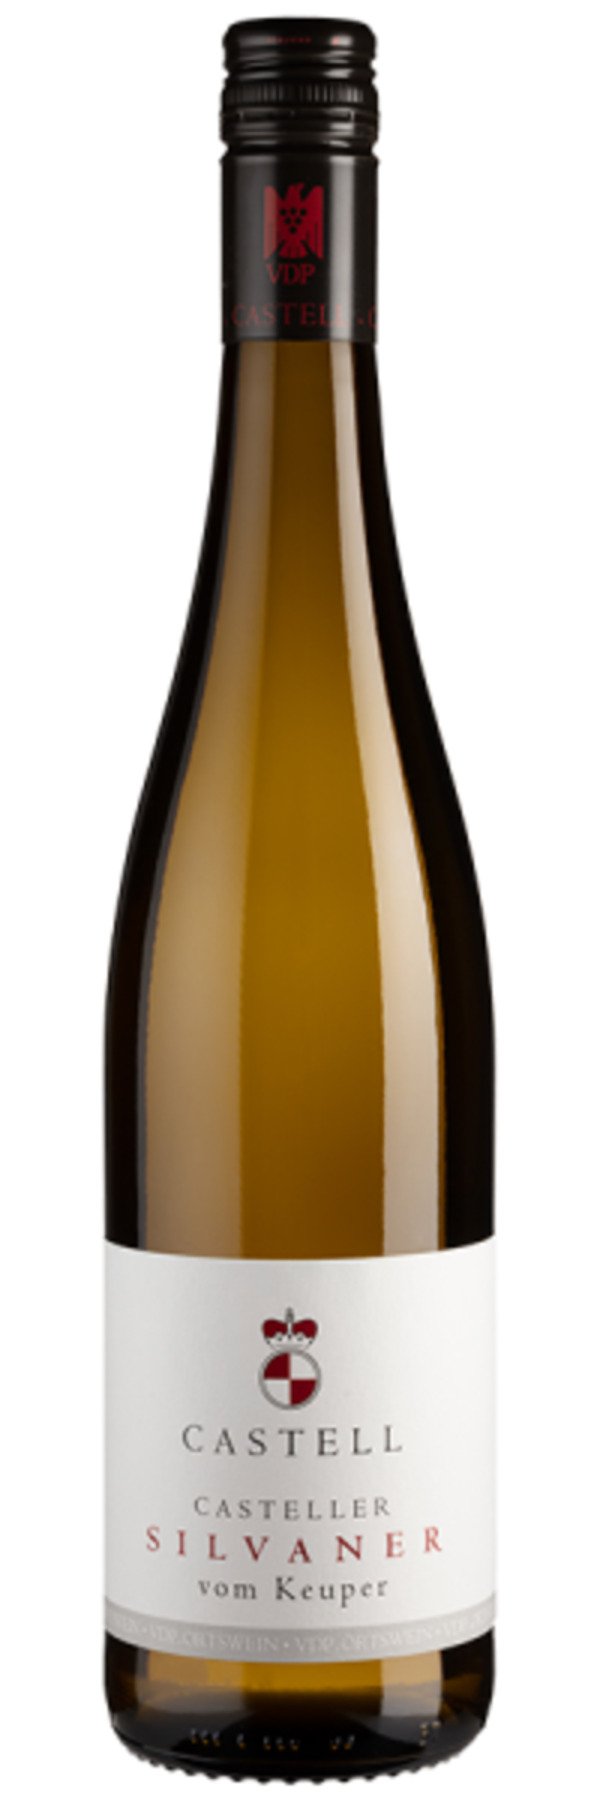 Casteller Silvaner vom Keuper - 2020 - Castell-Castell - Deutscher Weißwein  von Weinfreunde ansehen!